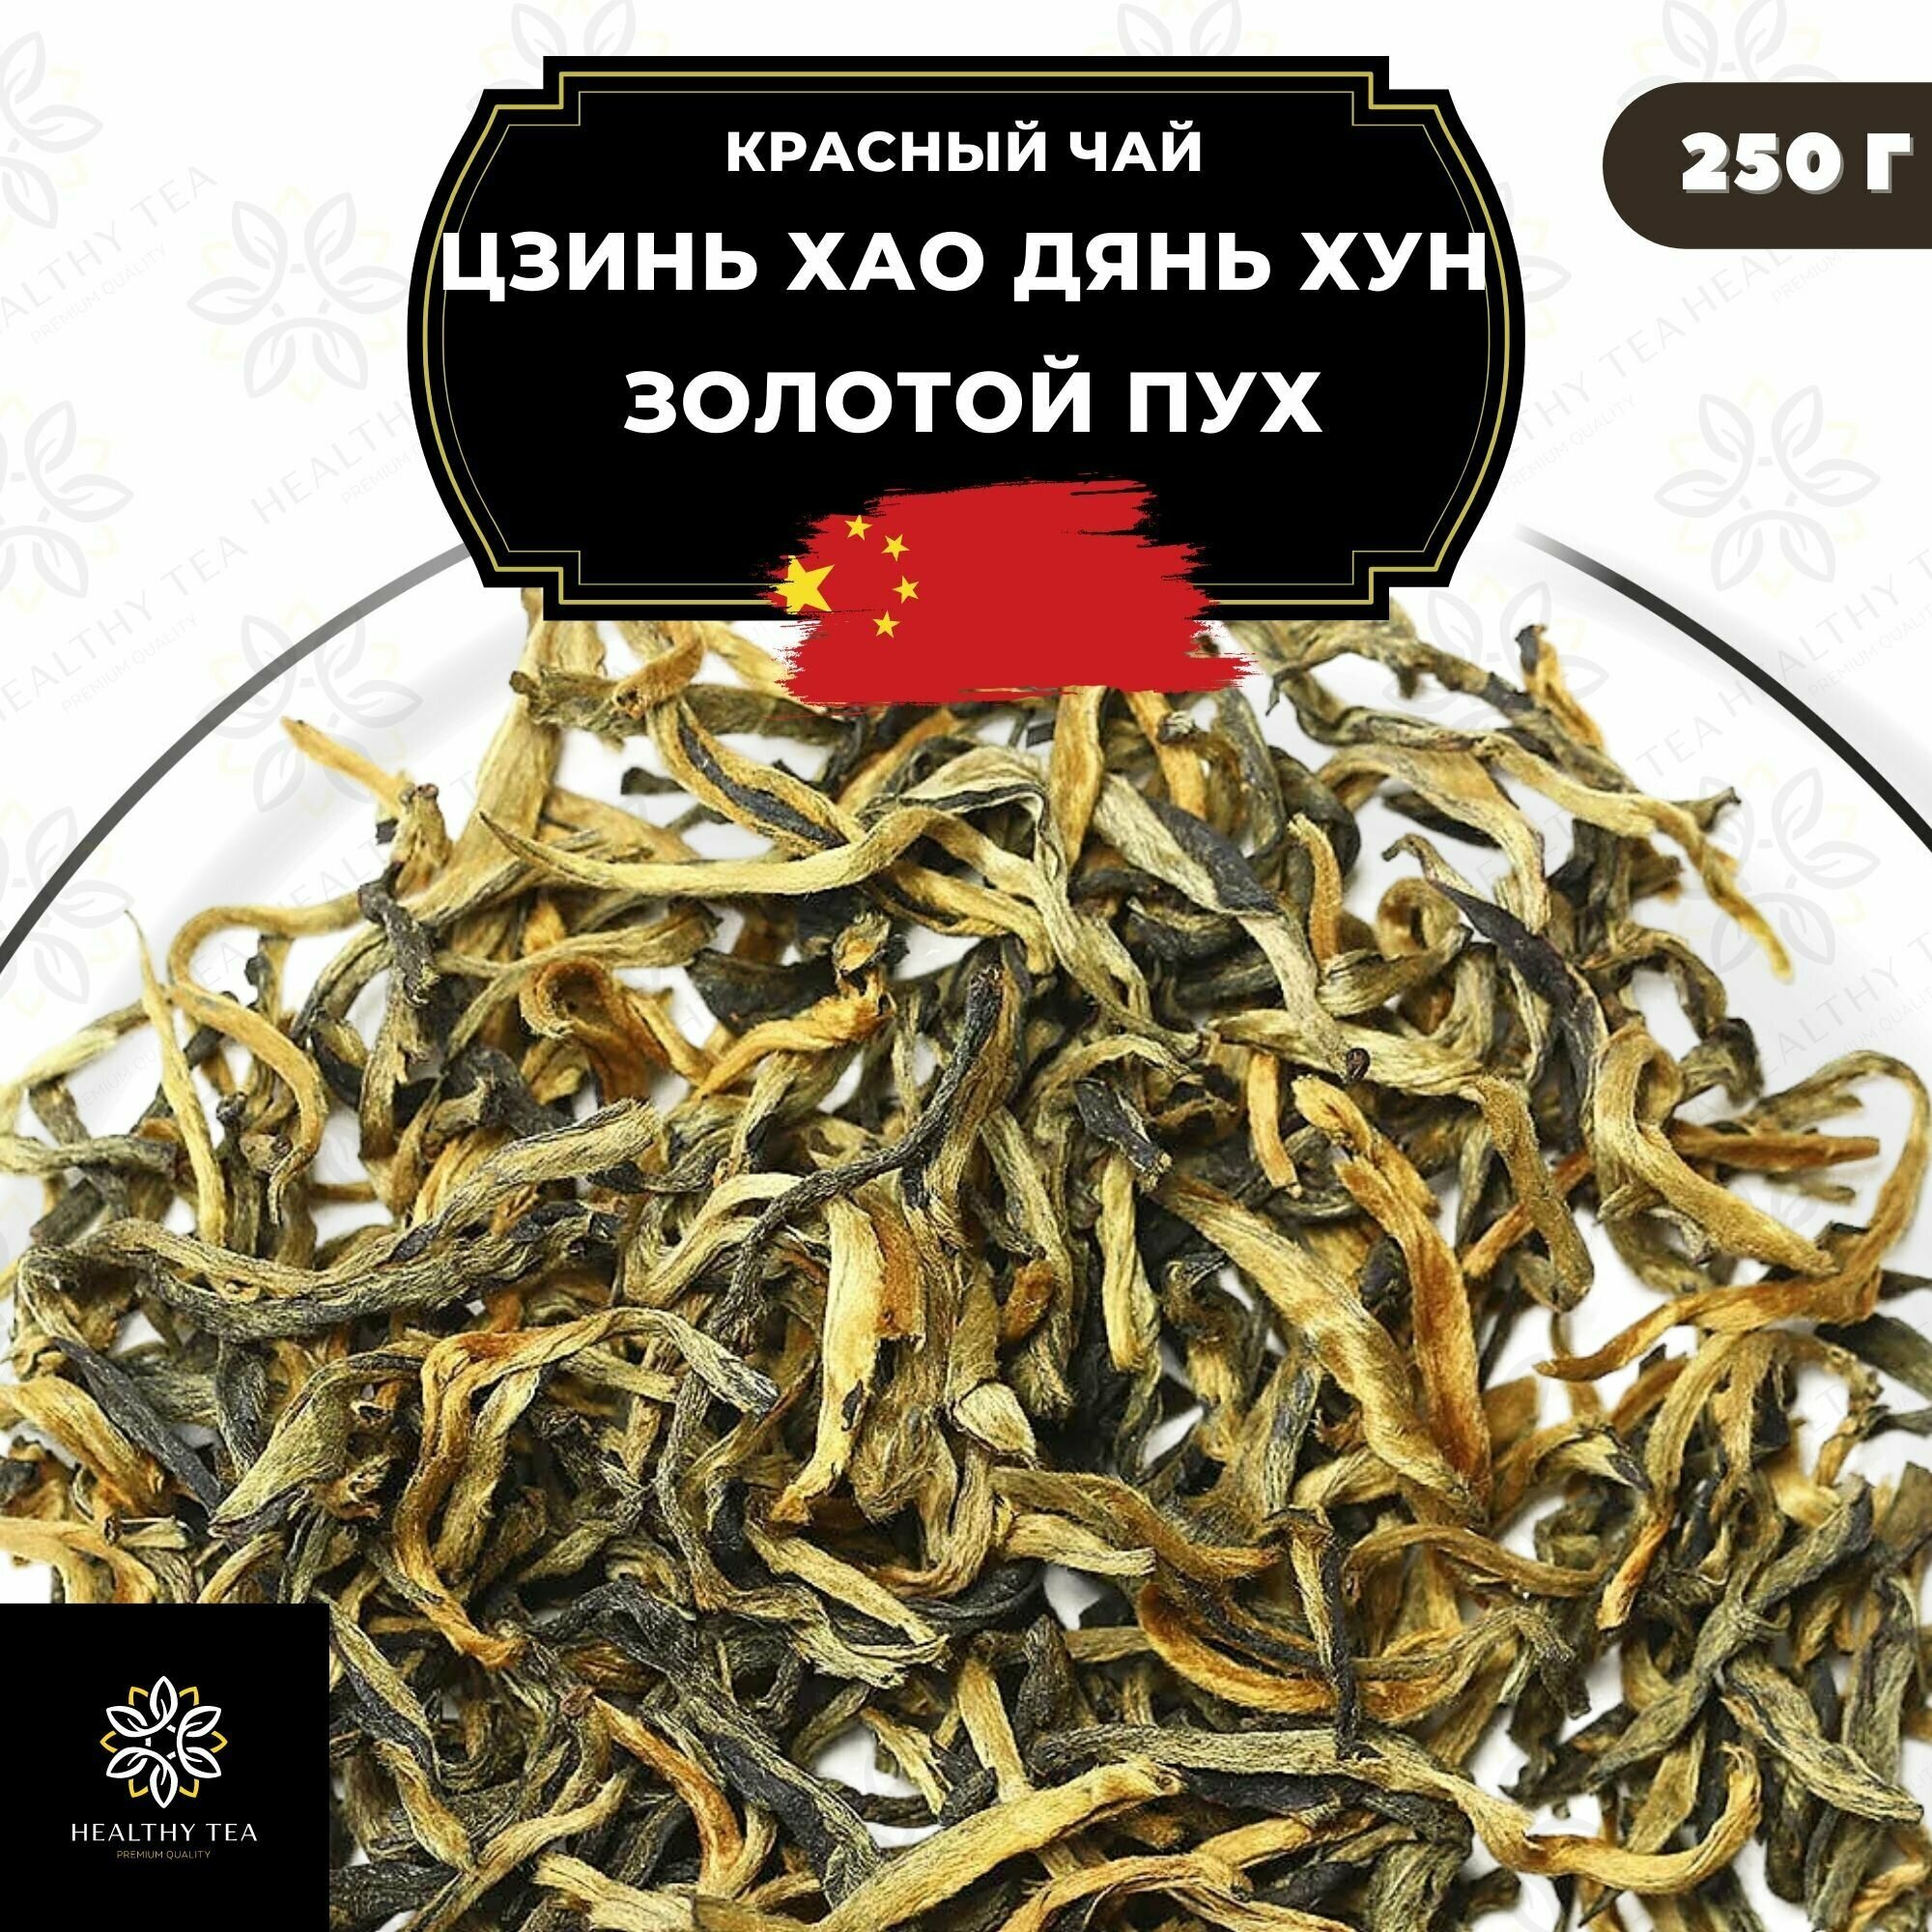 Китайский красный чай Цзинь Хао Дянь Хун (Золотой пух) Полезный чай / HEALTHY TEA, 250 г